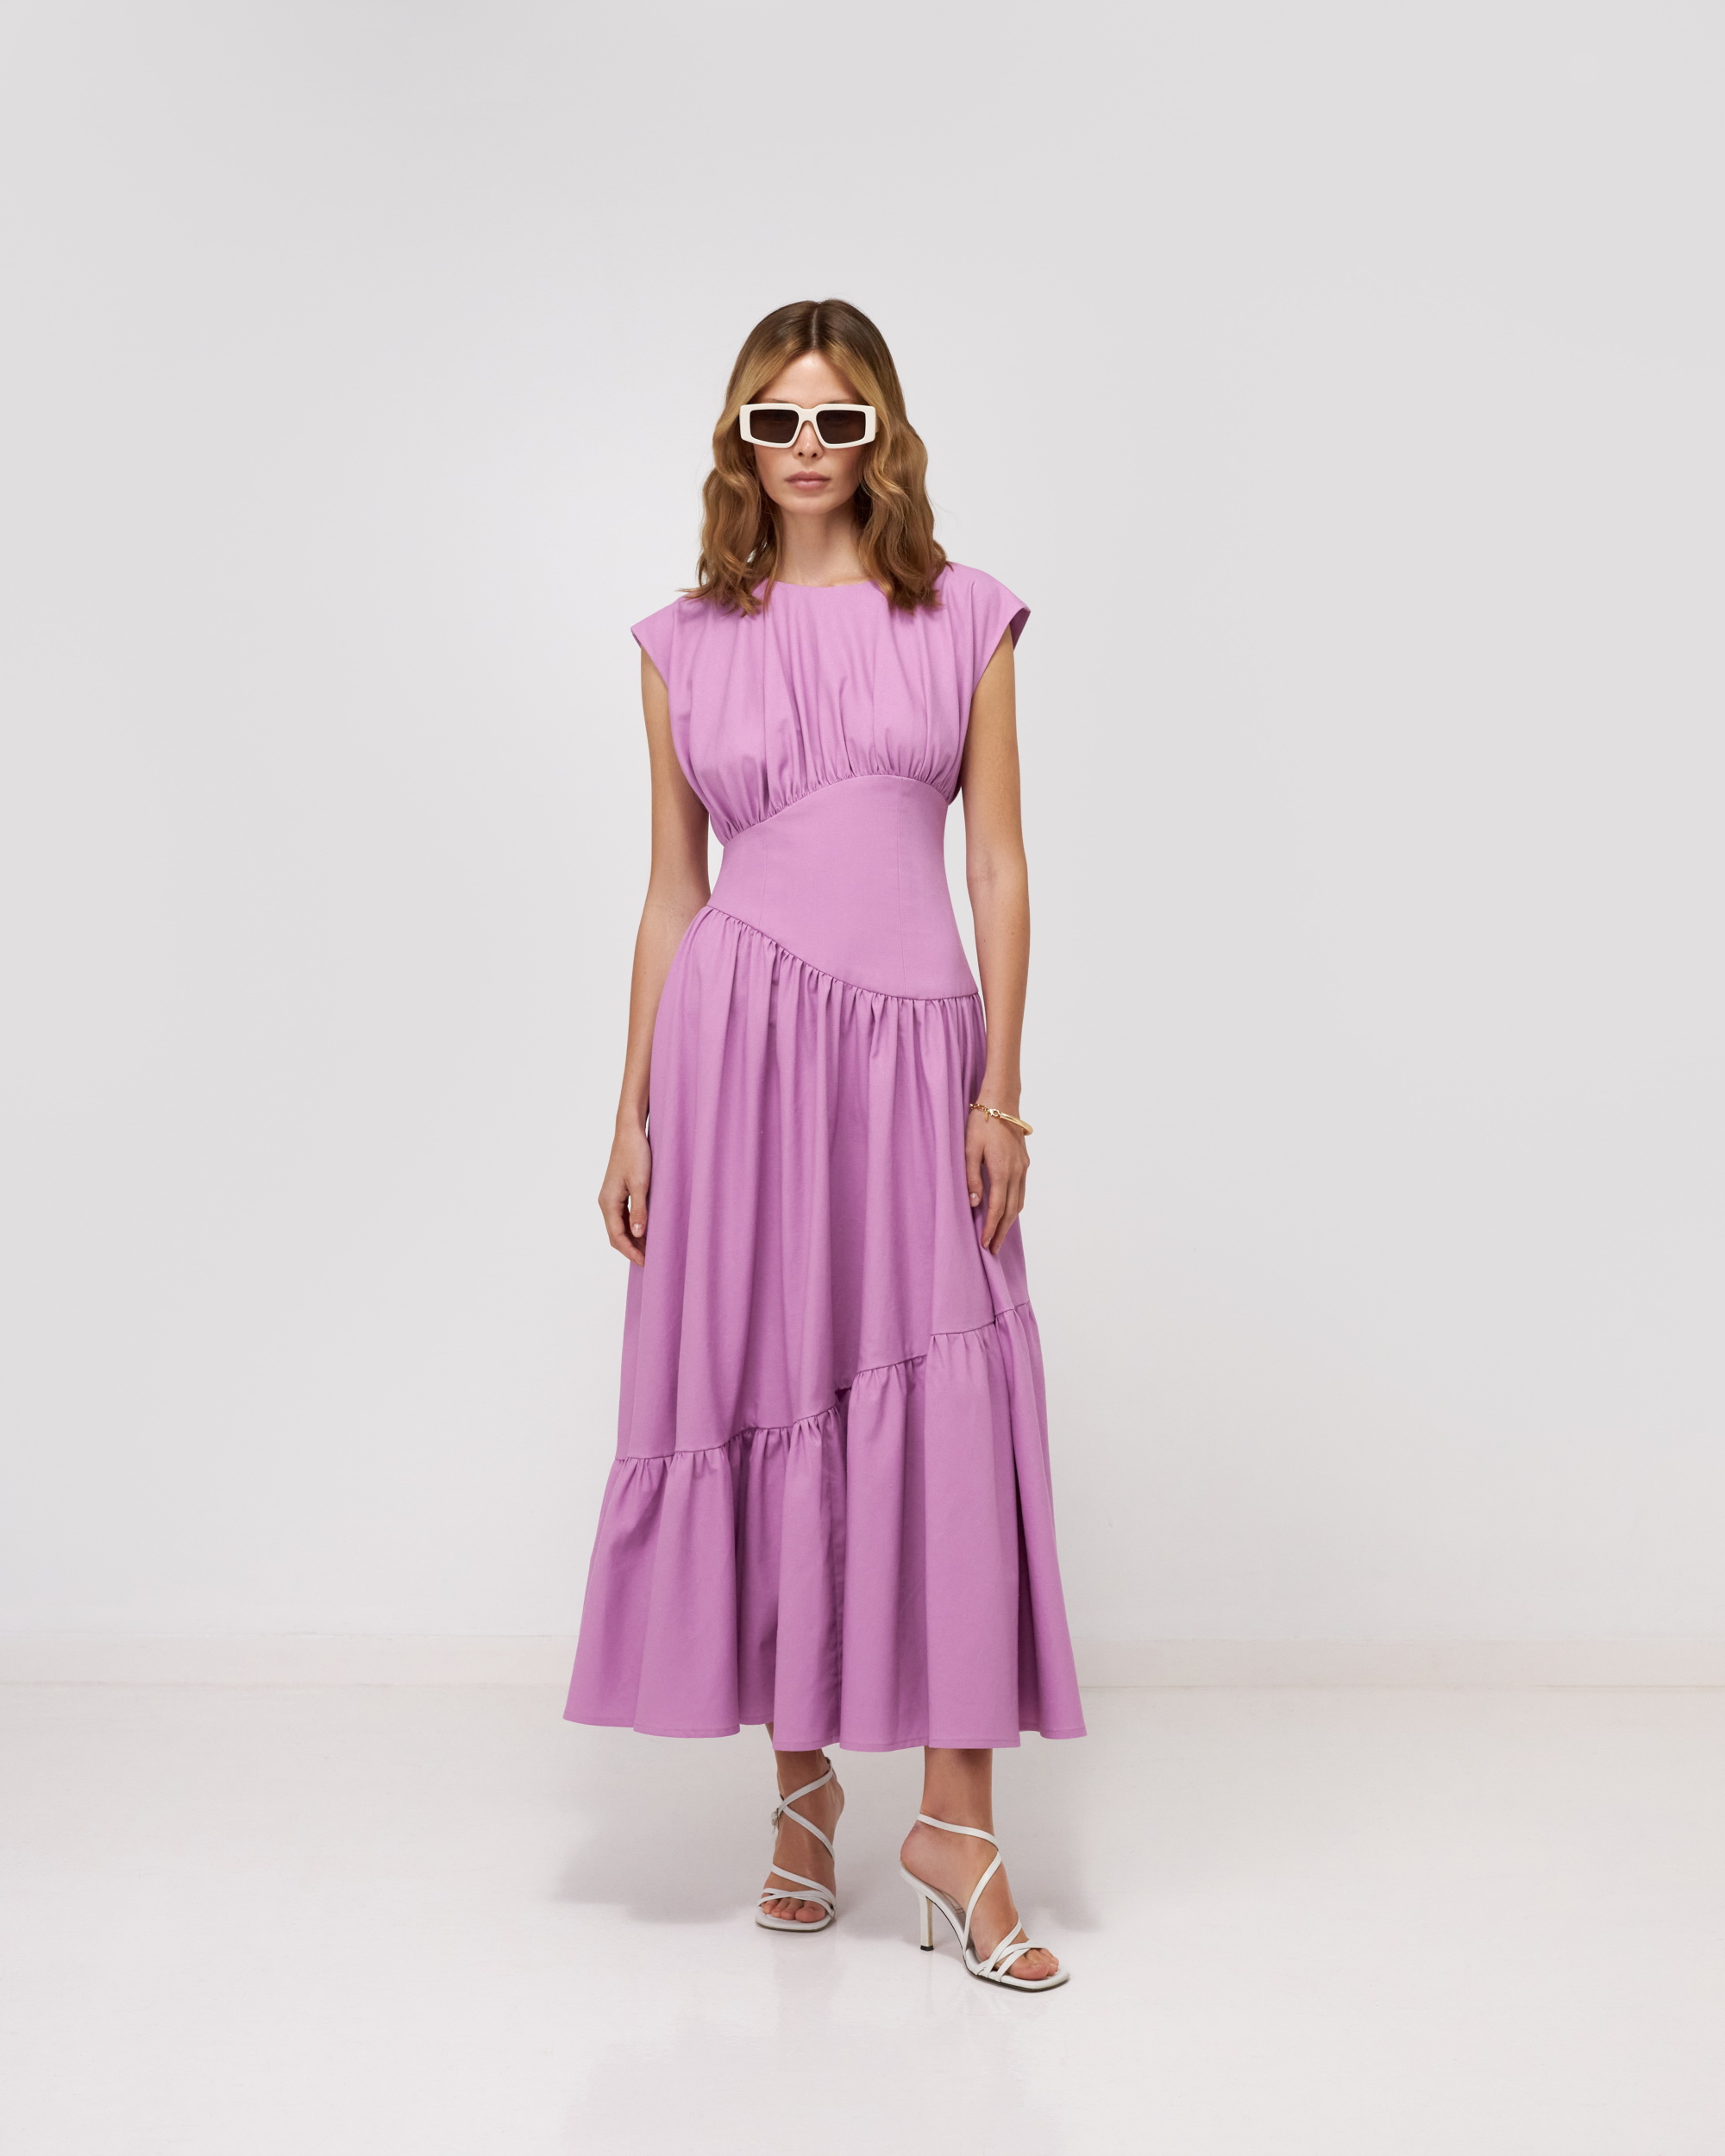 Dress, pattern №937 buy online